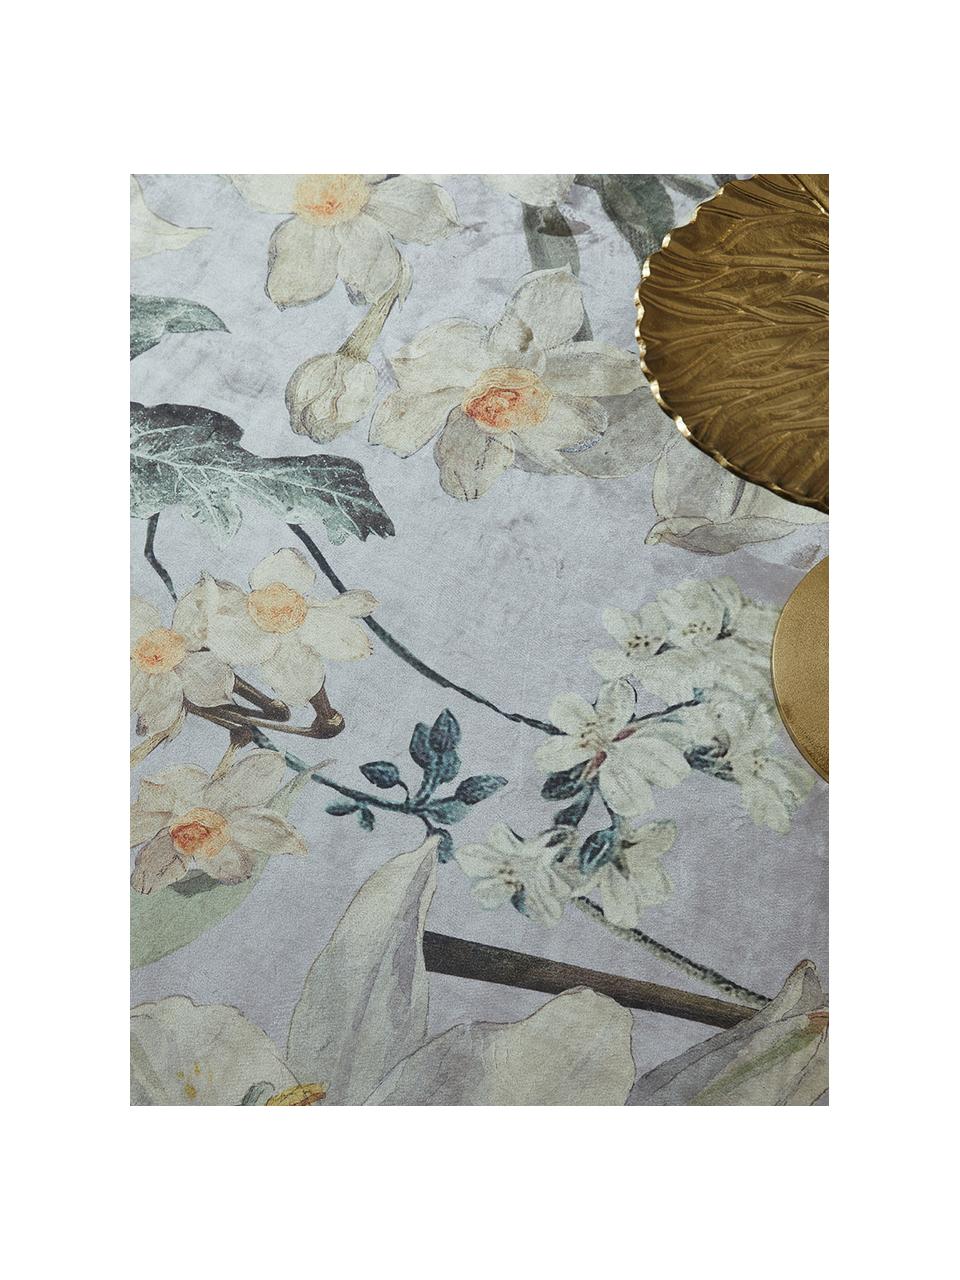 Teppich Rosalee mit Blumenmuster, 60% Polyester, 30% thermoplastisches Polyurethan, 10% Baumwolle, Hellgrau, Mehrfarbig, B 180 x L 240 cm (Grösse M)